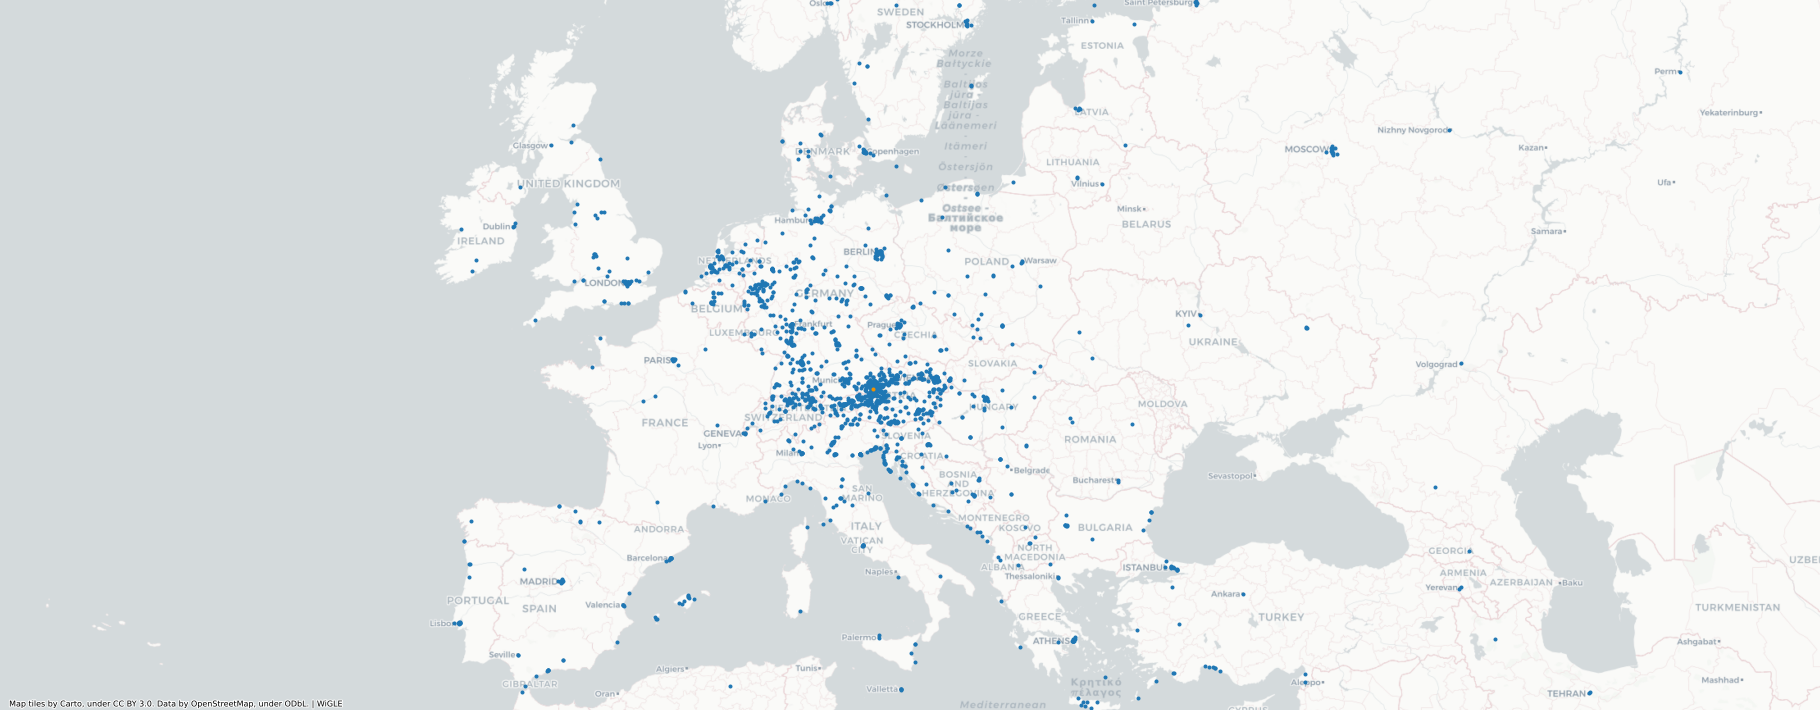 Europakarte mit Aufenthaltsorten als Punkte